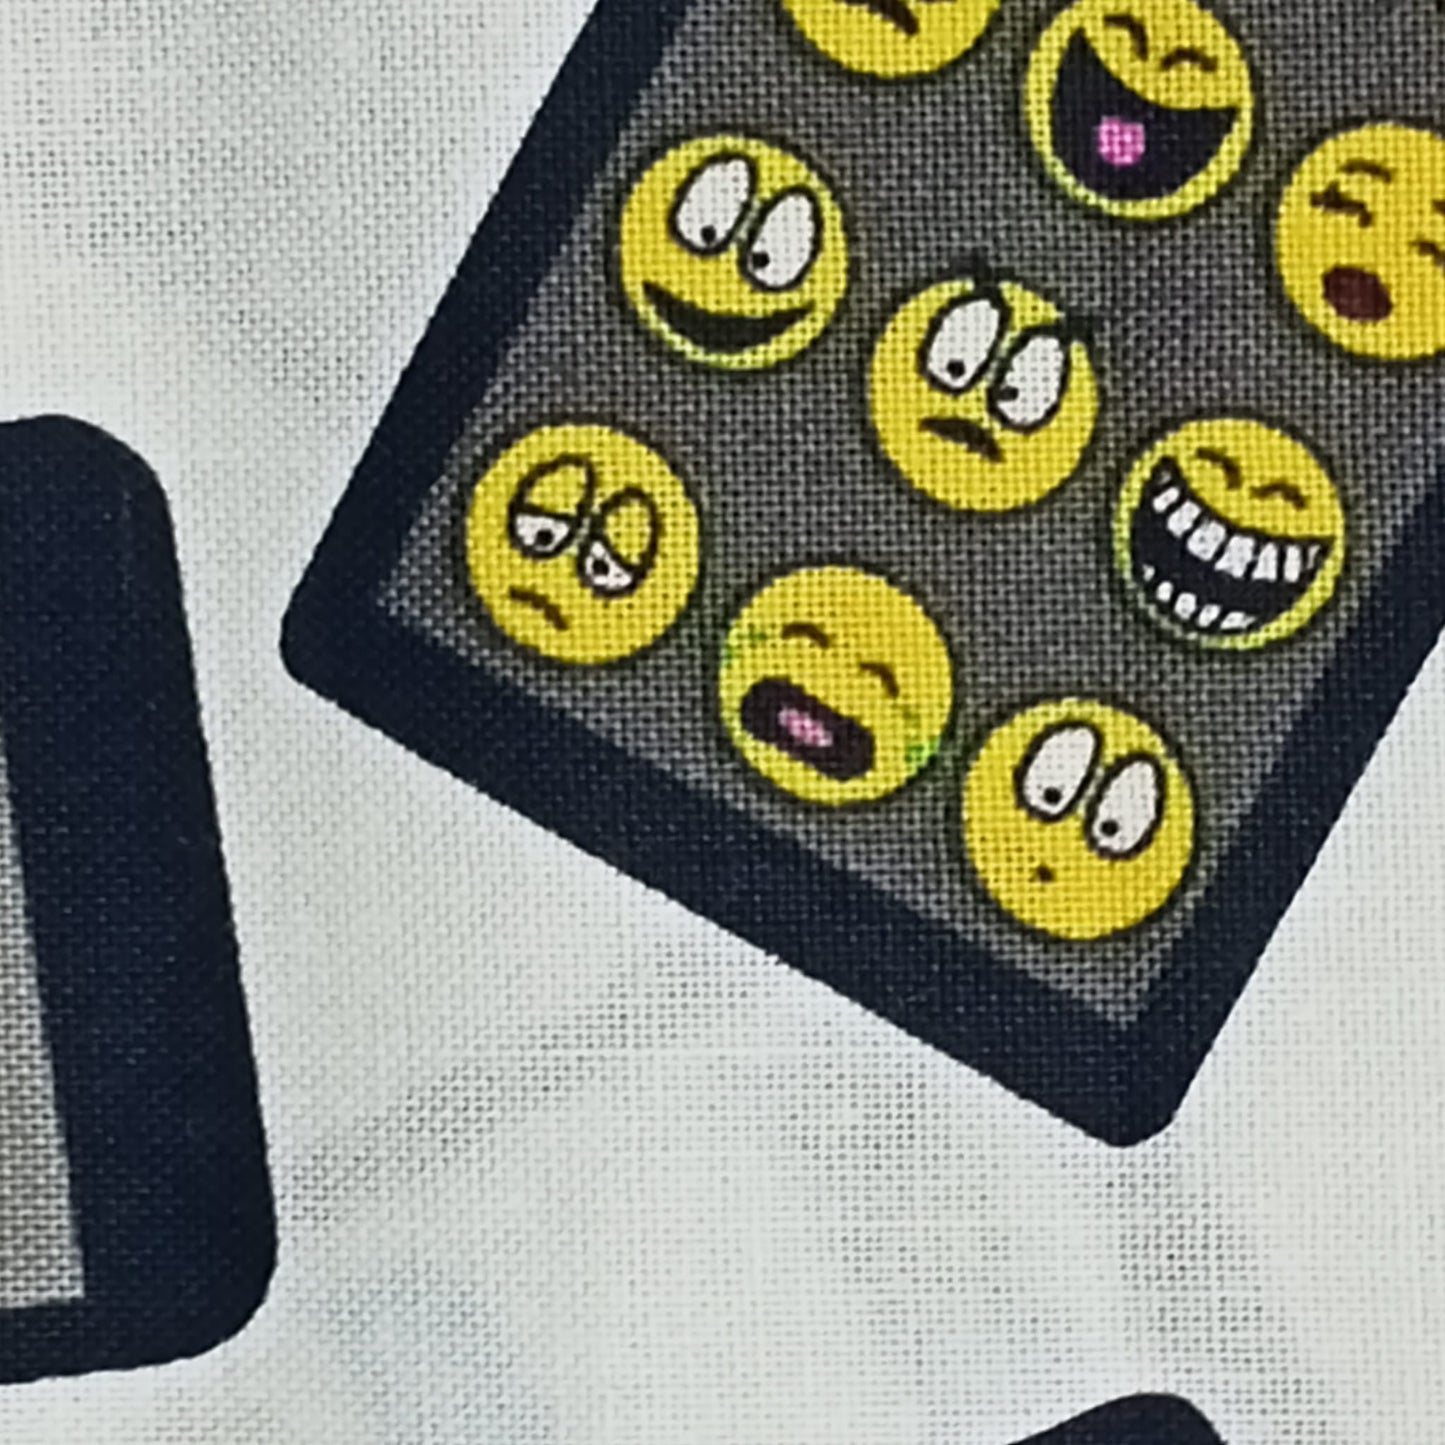 Tela divertida llena de los famosos emojis y teléfonos móviles